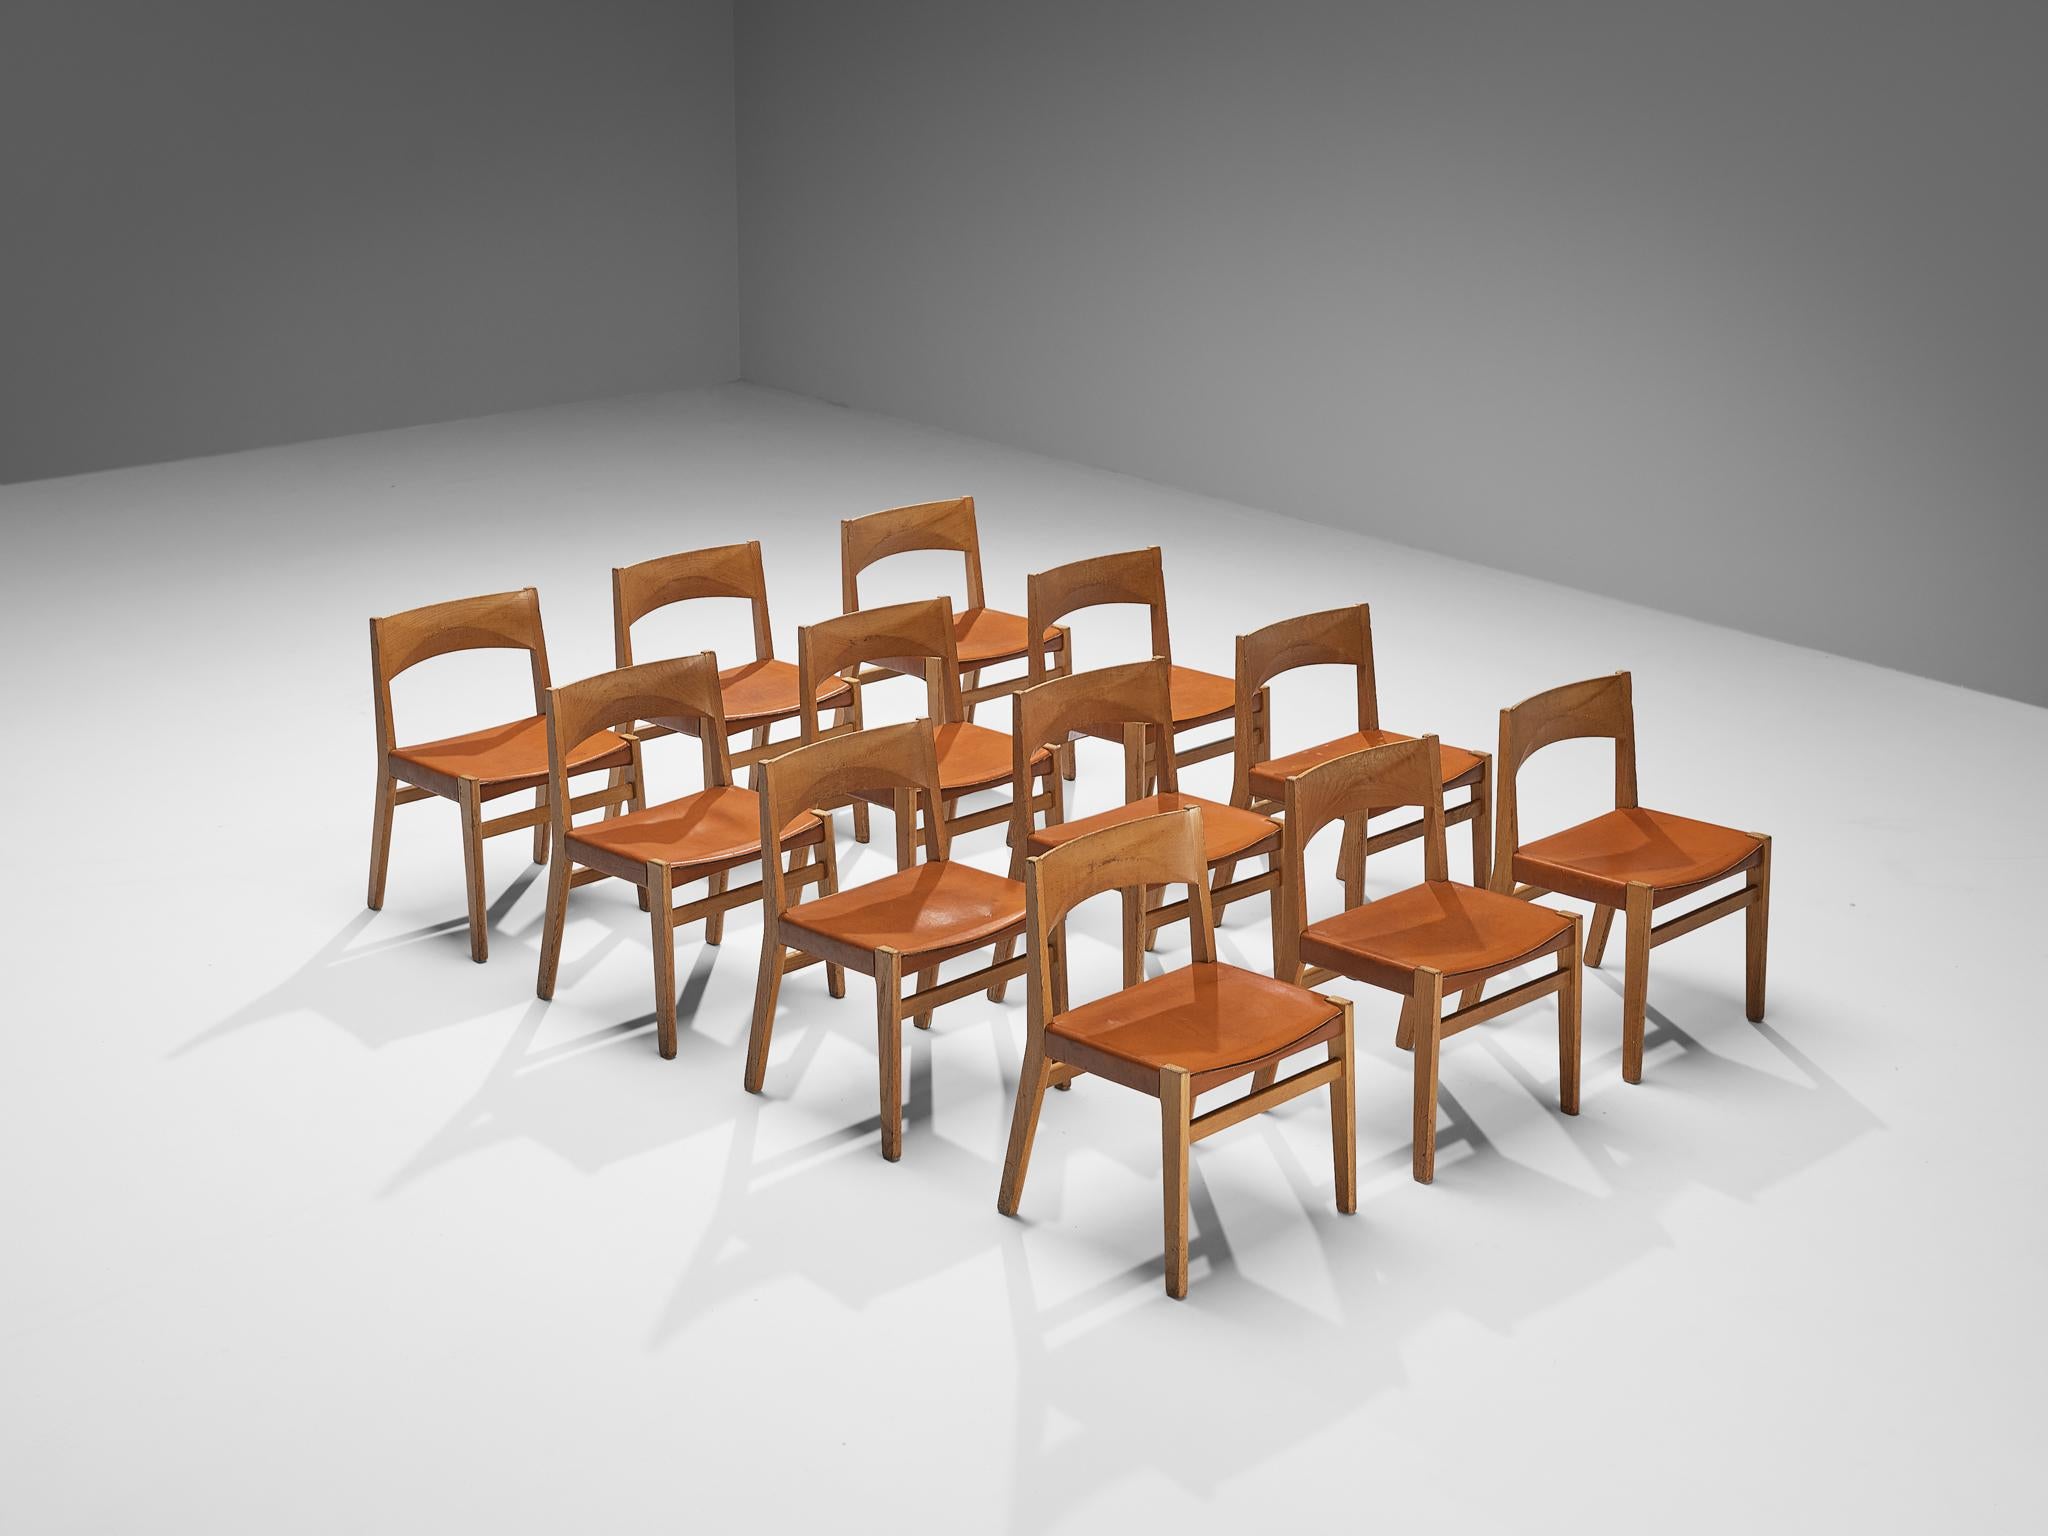 John Vedel Rieper pour Källemo, ensemble de douze chaises de salle à manger, chêne, cuir, Danemark, années 1960

Ce design se caractérise par un cadre constructif aux lignes épurées et aux formes géométriques. L'assise est recouverte de cuir cognac